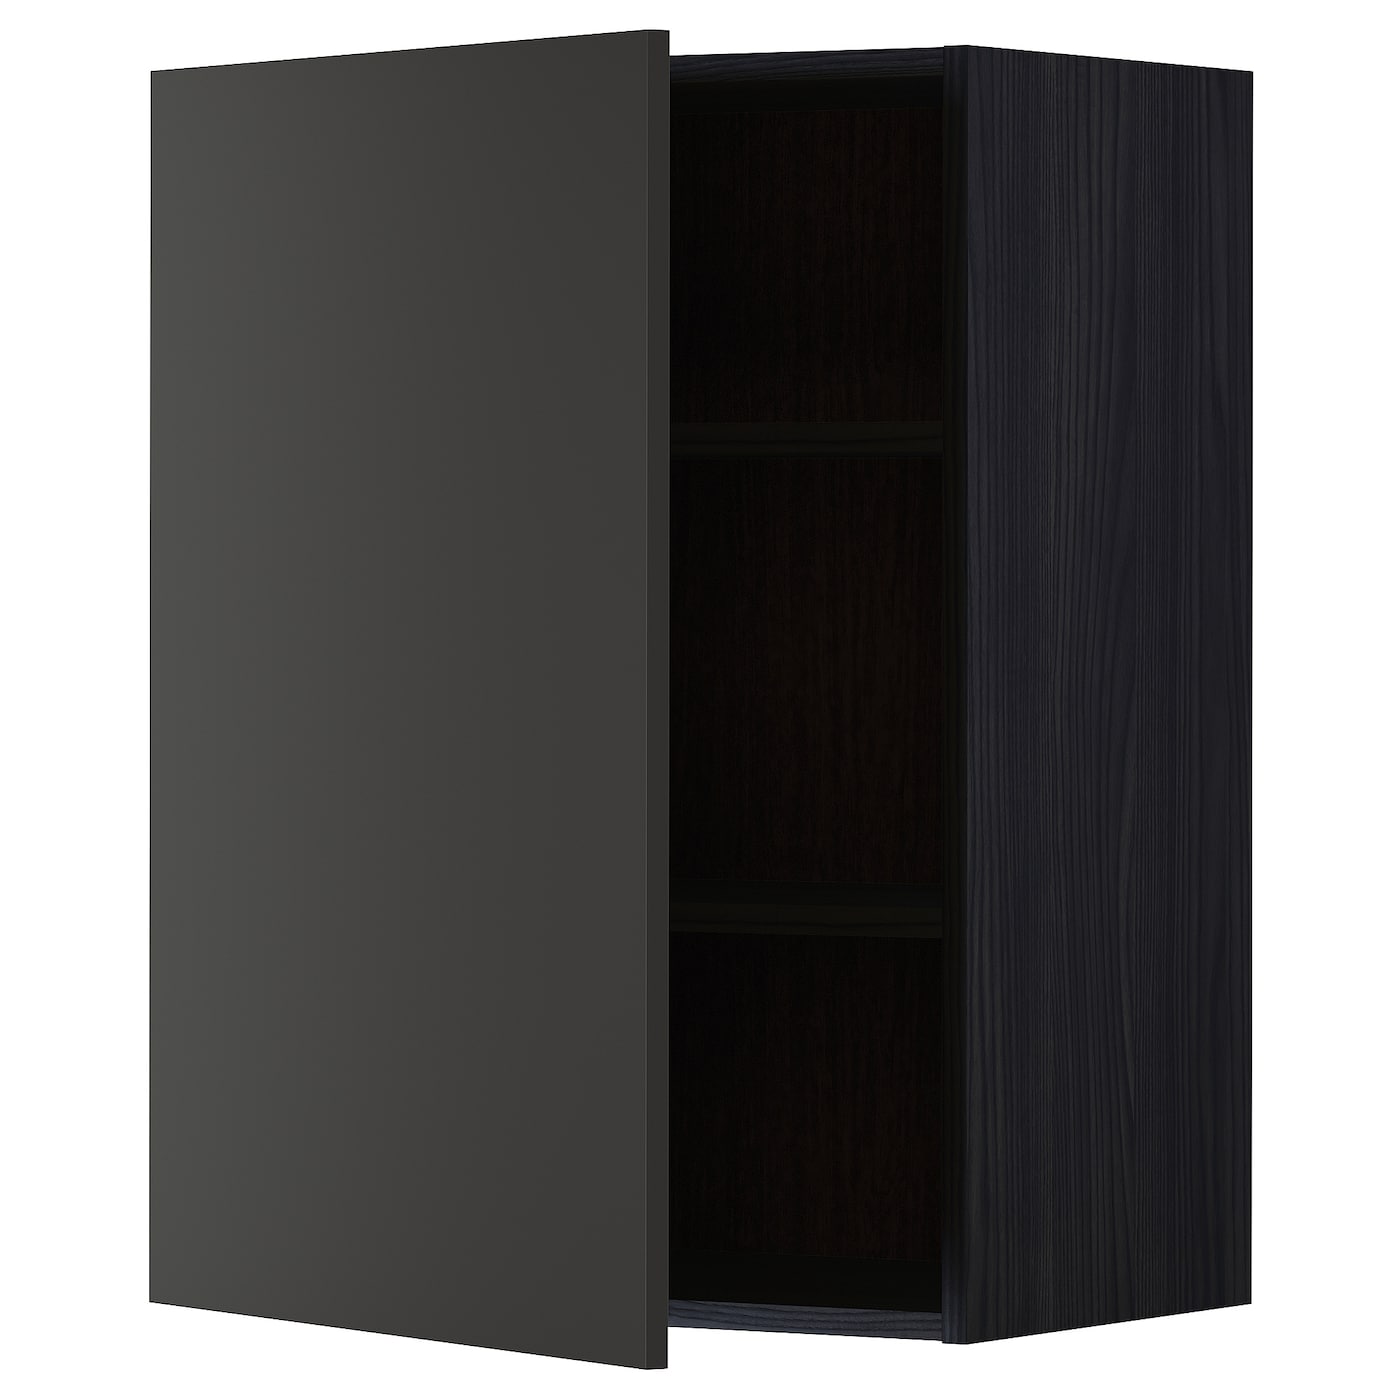 Навесной шкаф с полкой - METOD IKEA/ МЕТОД ИКЕА, 80х60 см, черный